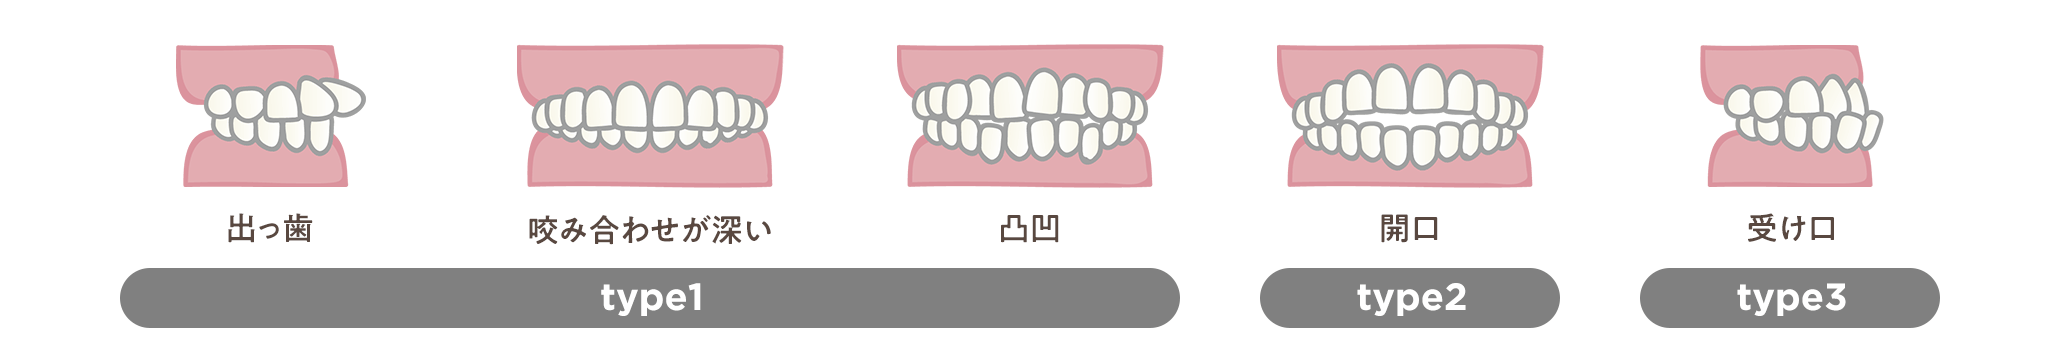 出っ歯・咬み合わせが深い・凸凹はtype1、開口はtype2、受け口はtype3